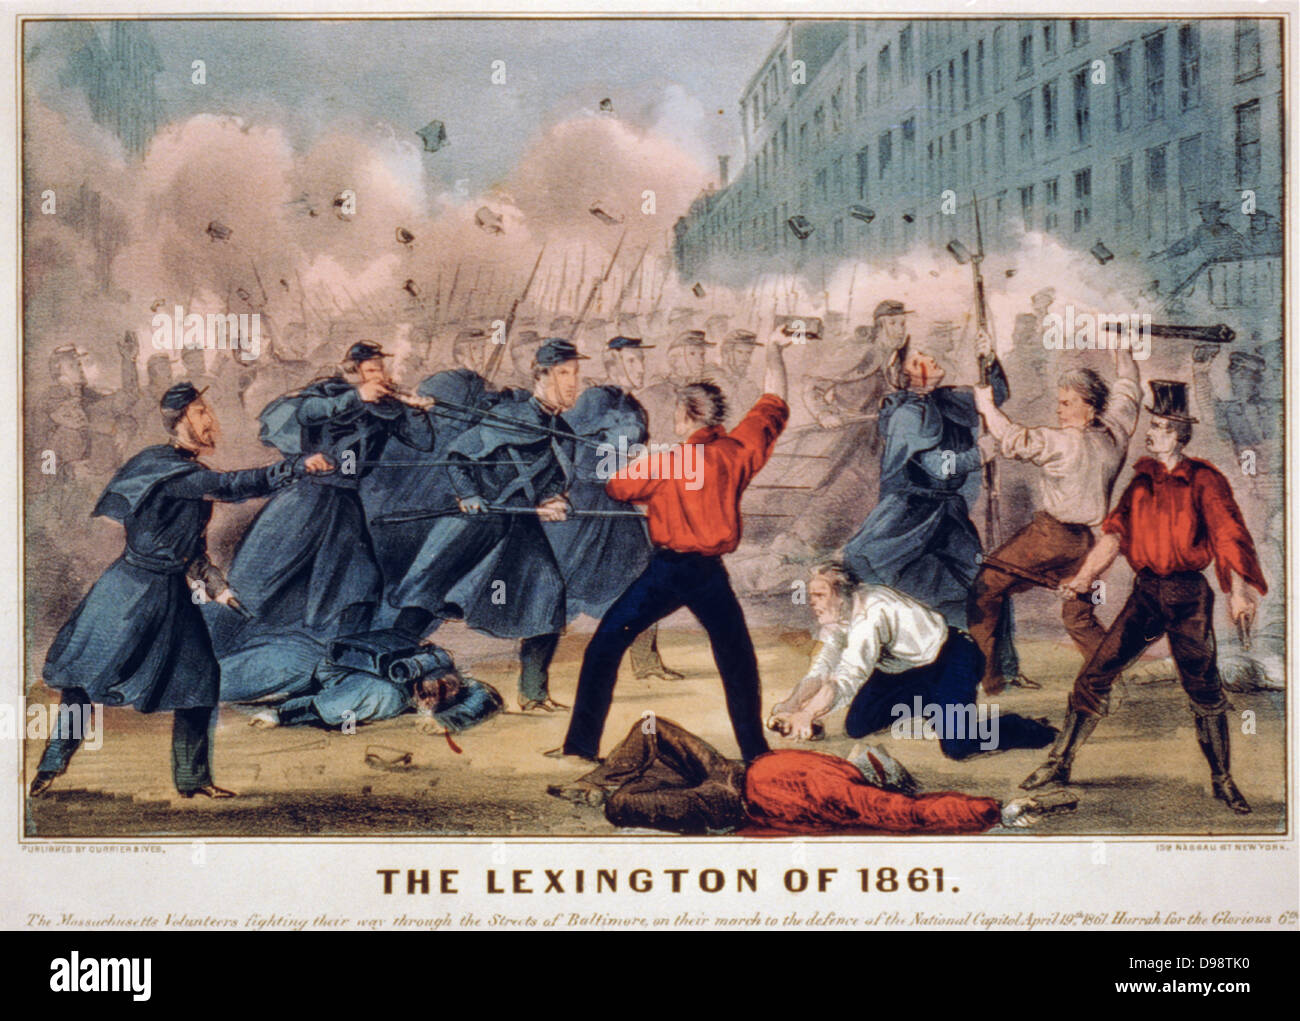 American Civil War 1861-1865. Première bataille de Lexington a également appelé Bataille des balles de chanvre, 13-10 septembre 1861, New York. Currier & Ives à la main, print c1861. Banque D'Images